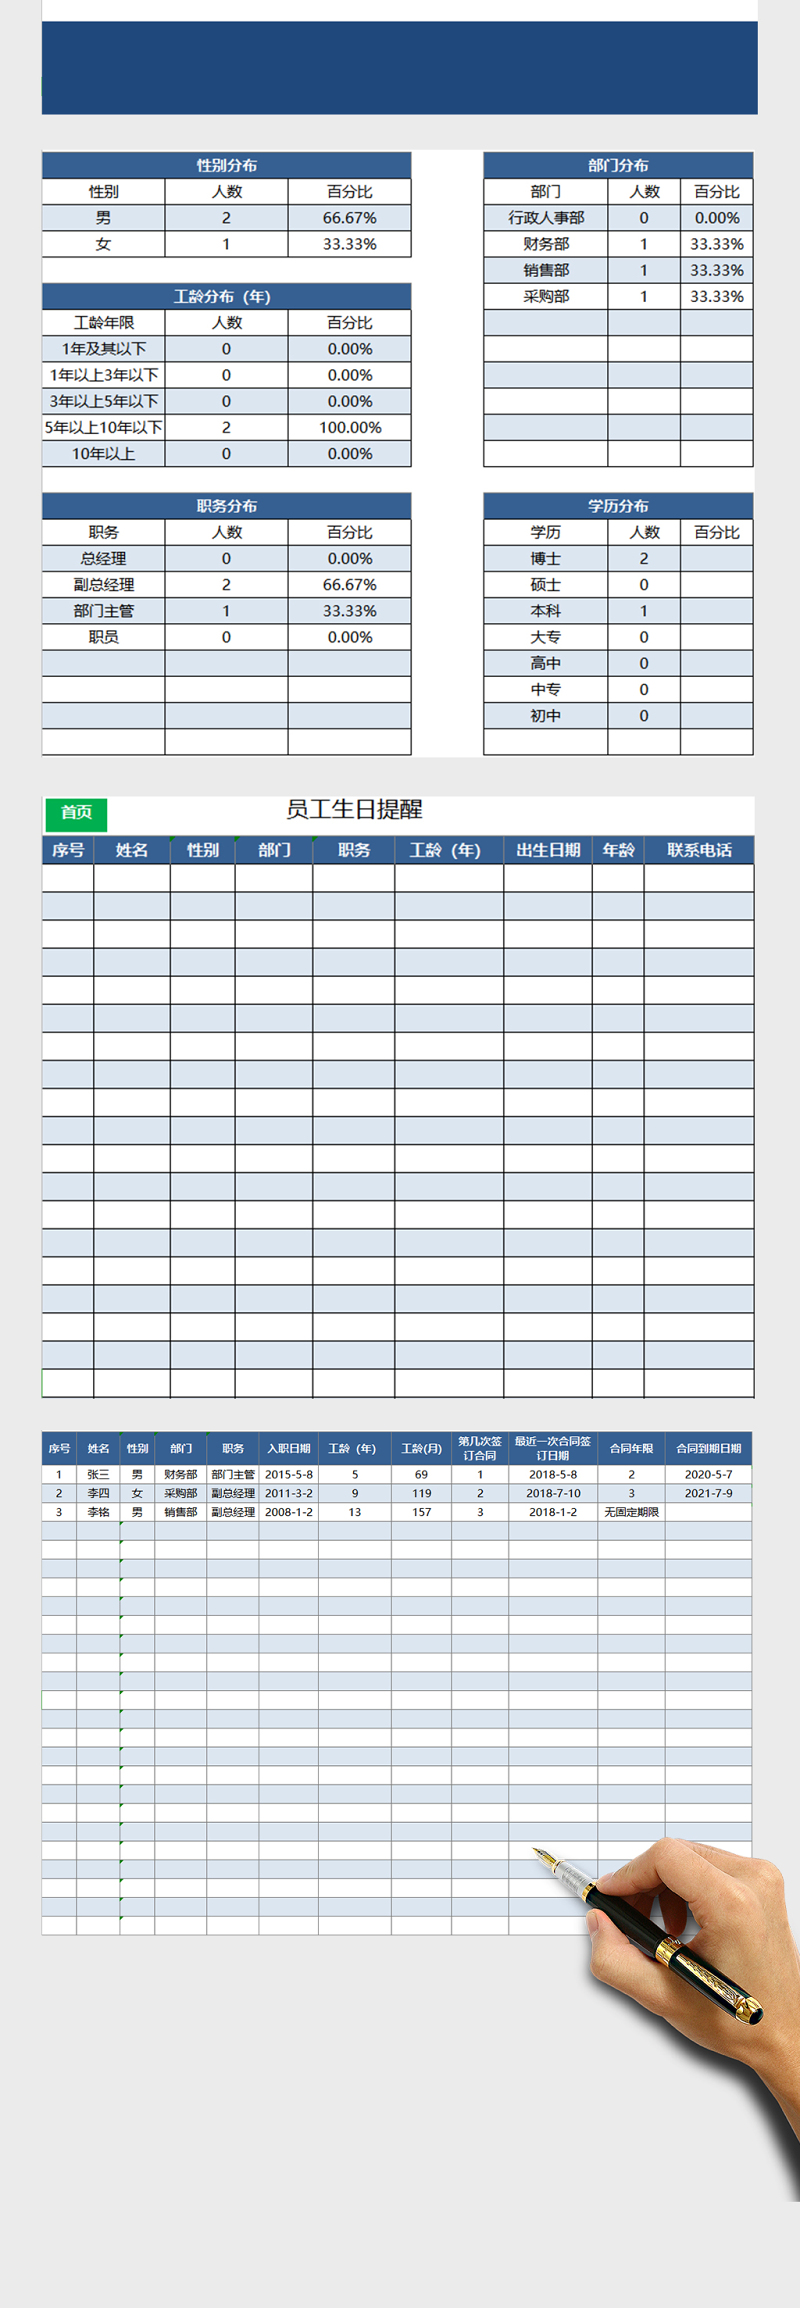 人事档案员工信息管理系统Excel表格模板